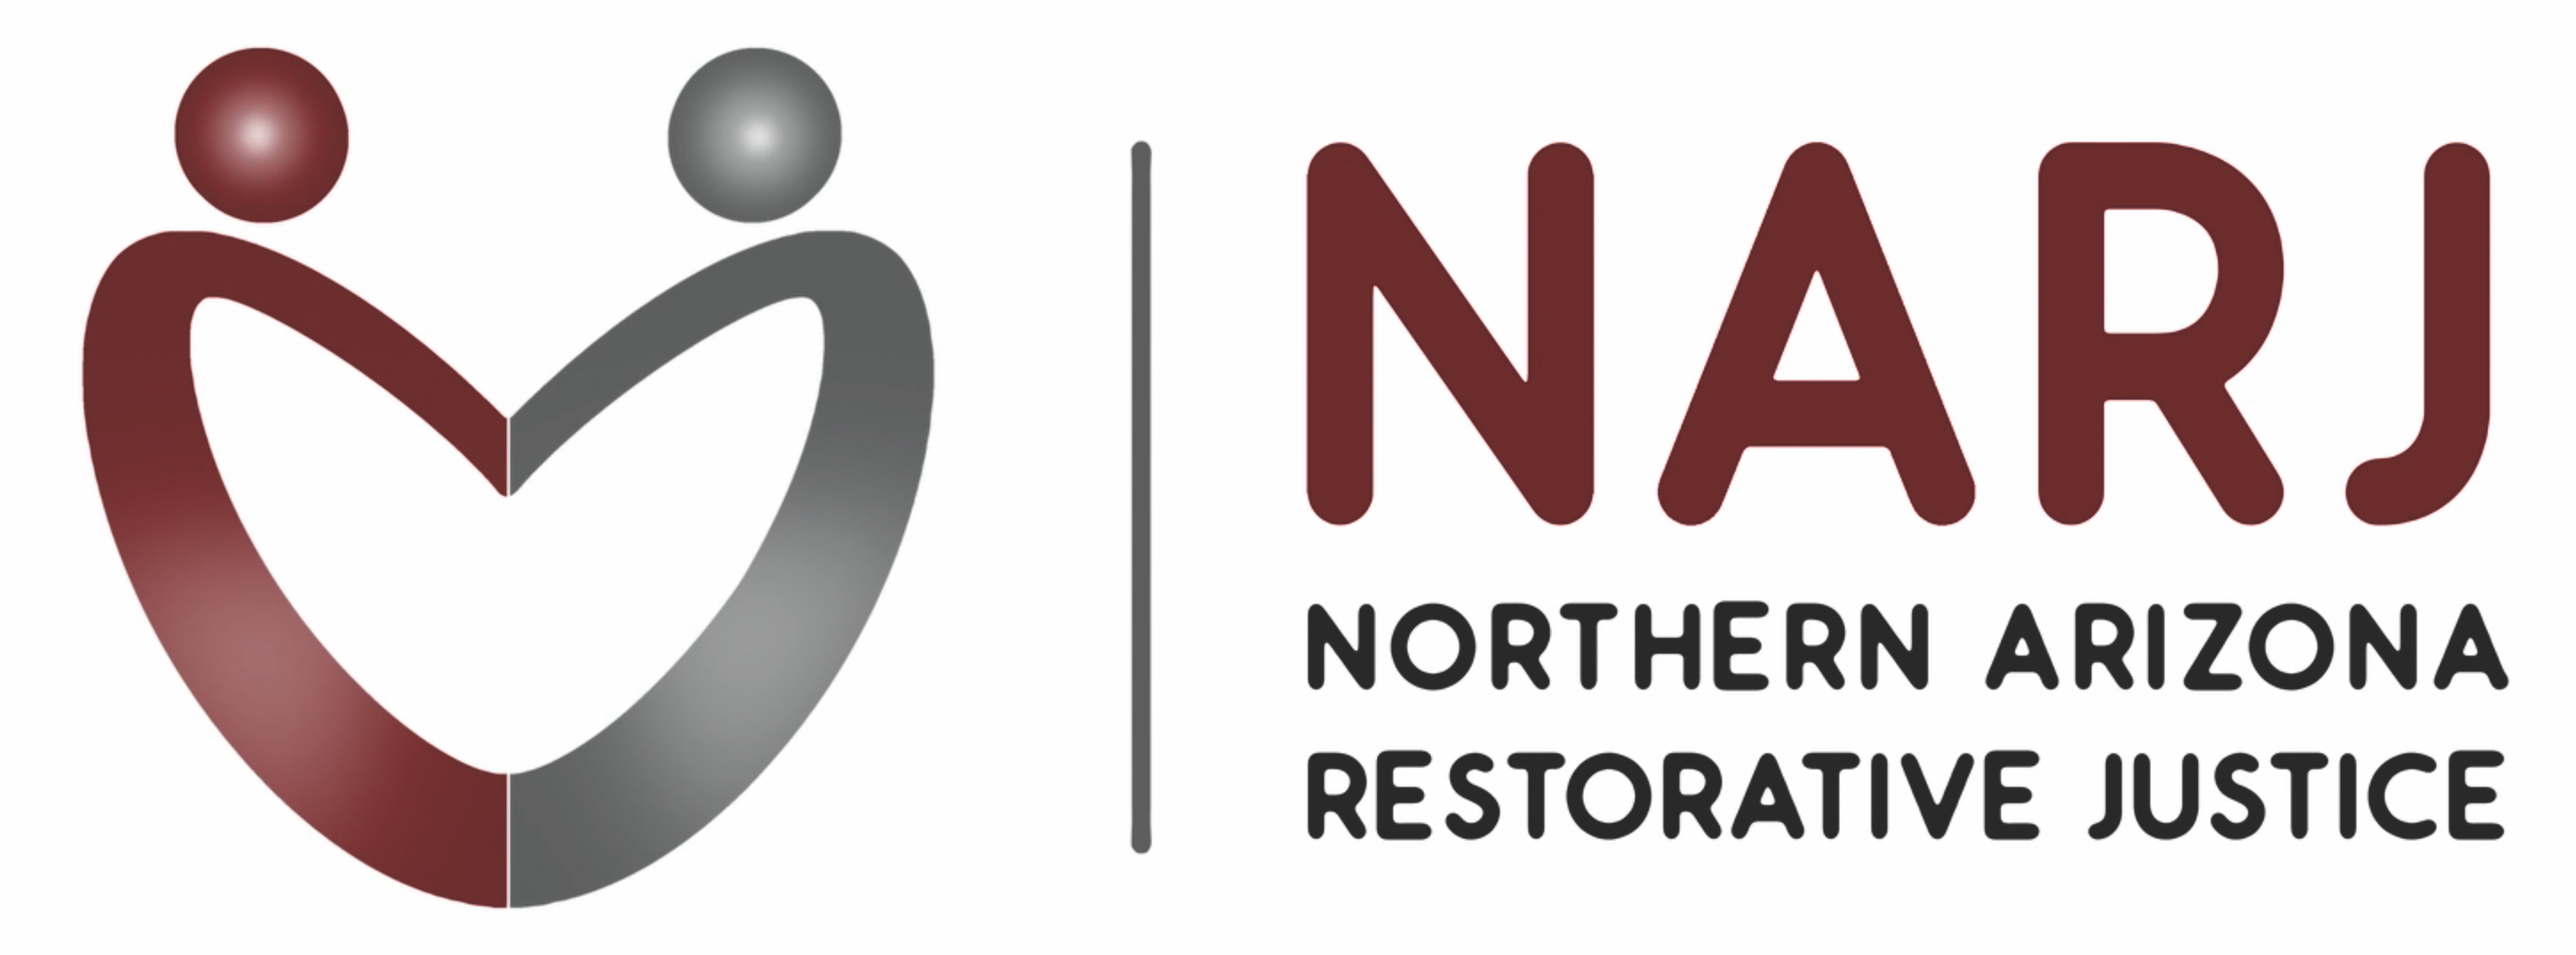 Northern Arizona Restorative Justice logo